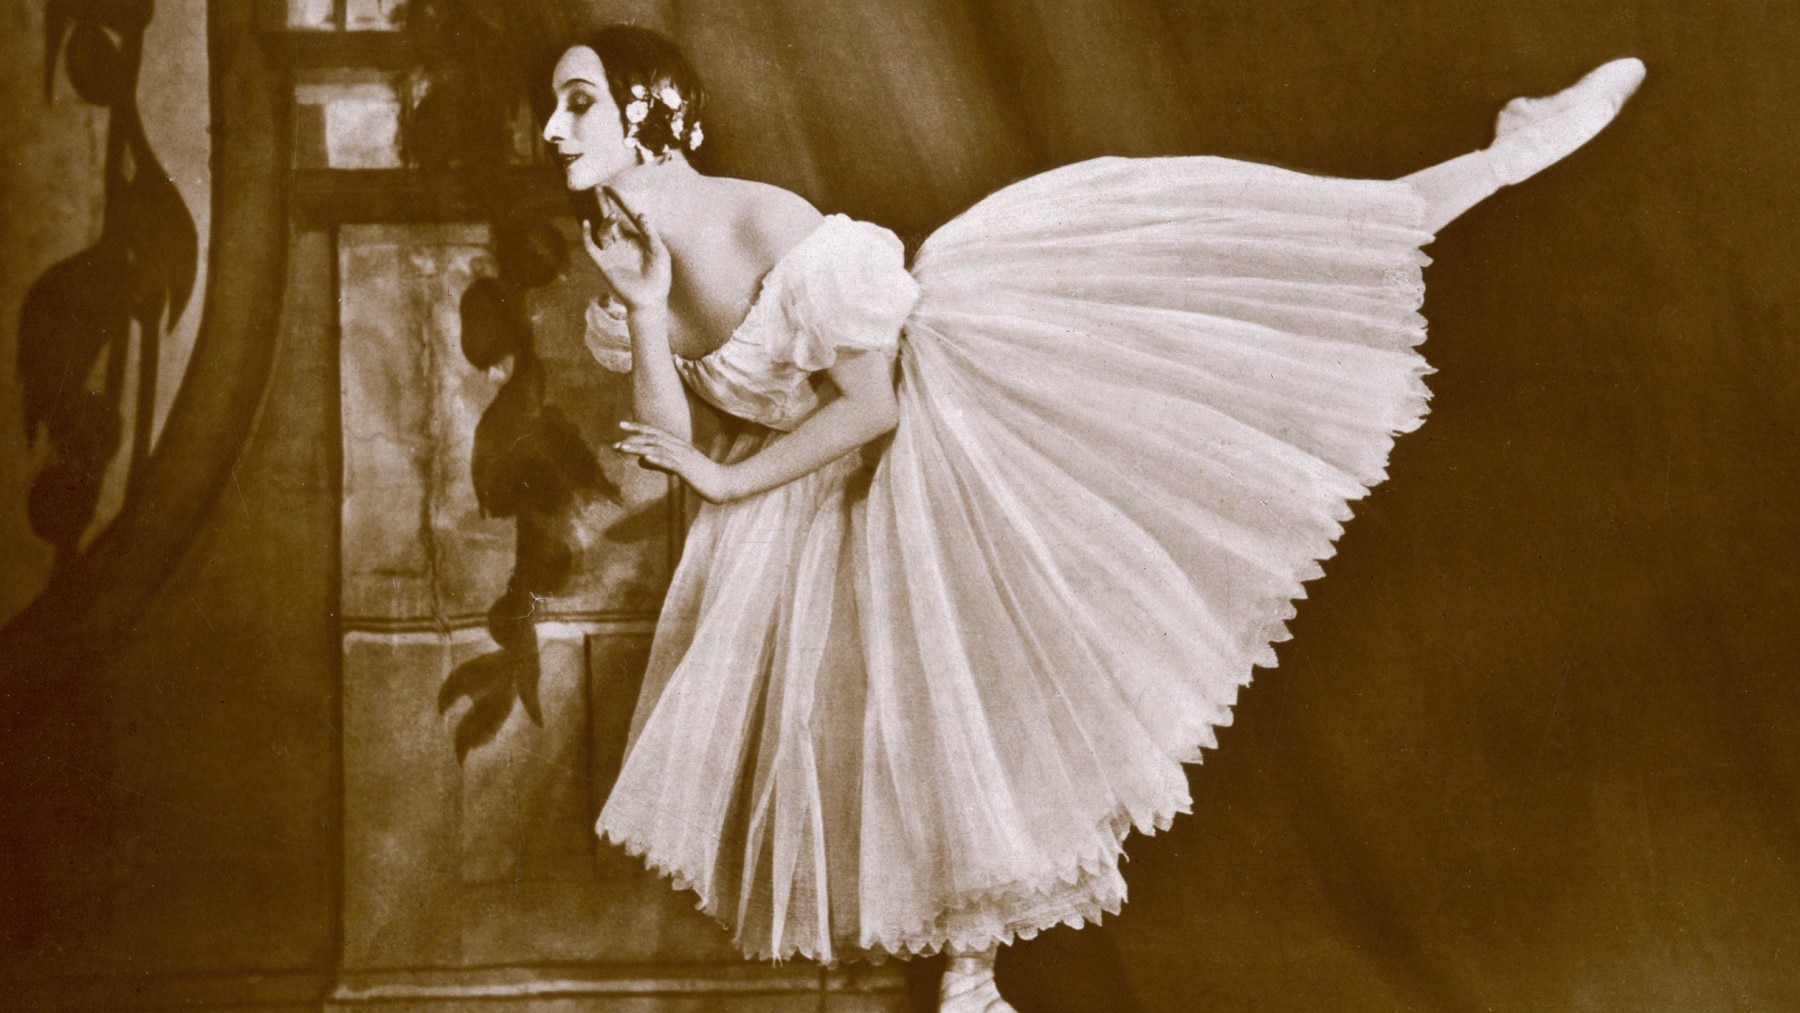 Russian ballerina Anna Pavlova